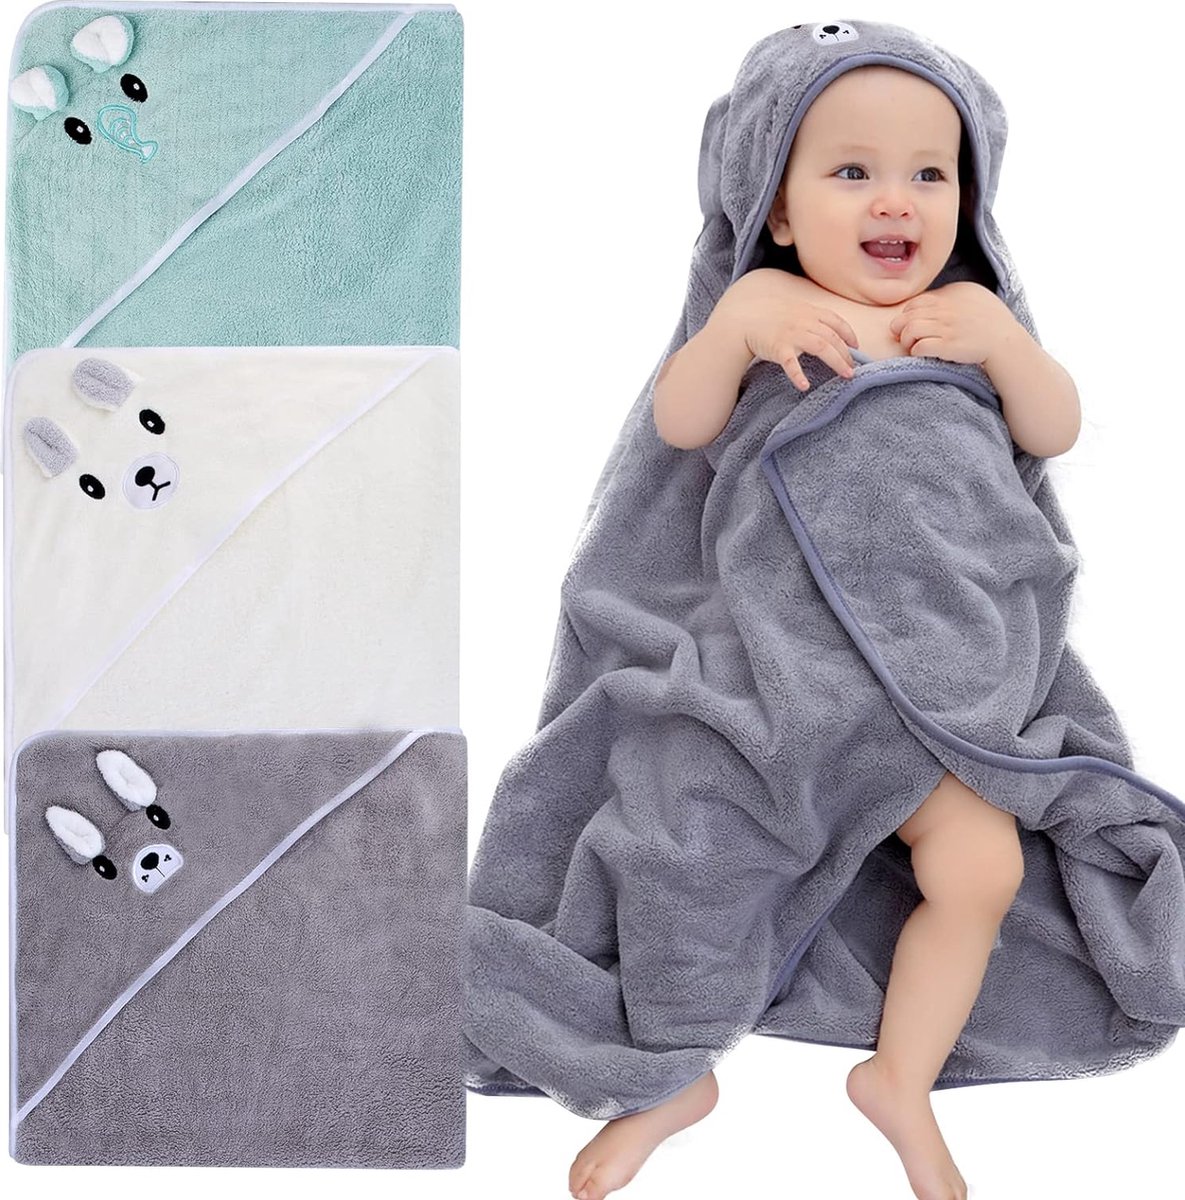 Babybadhanddoek, capuchonbadhanddoek, 3 stuks, 80 x 80 cm, badhanddoek met capuchon, voor baby's van 0 tot 3 jaar